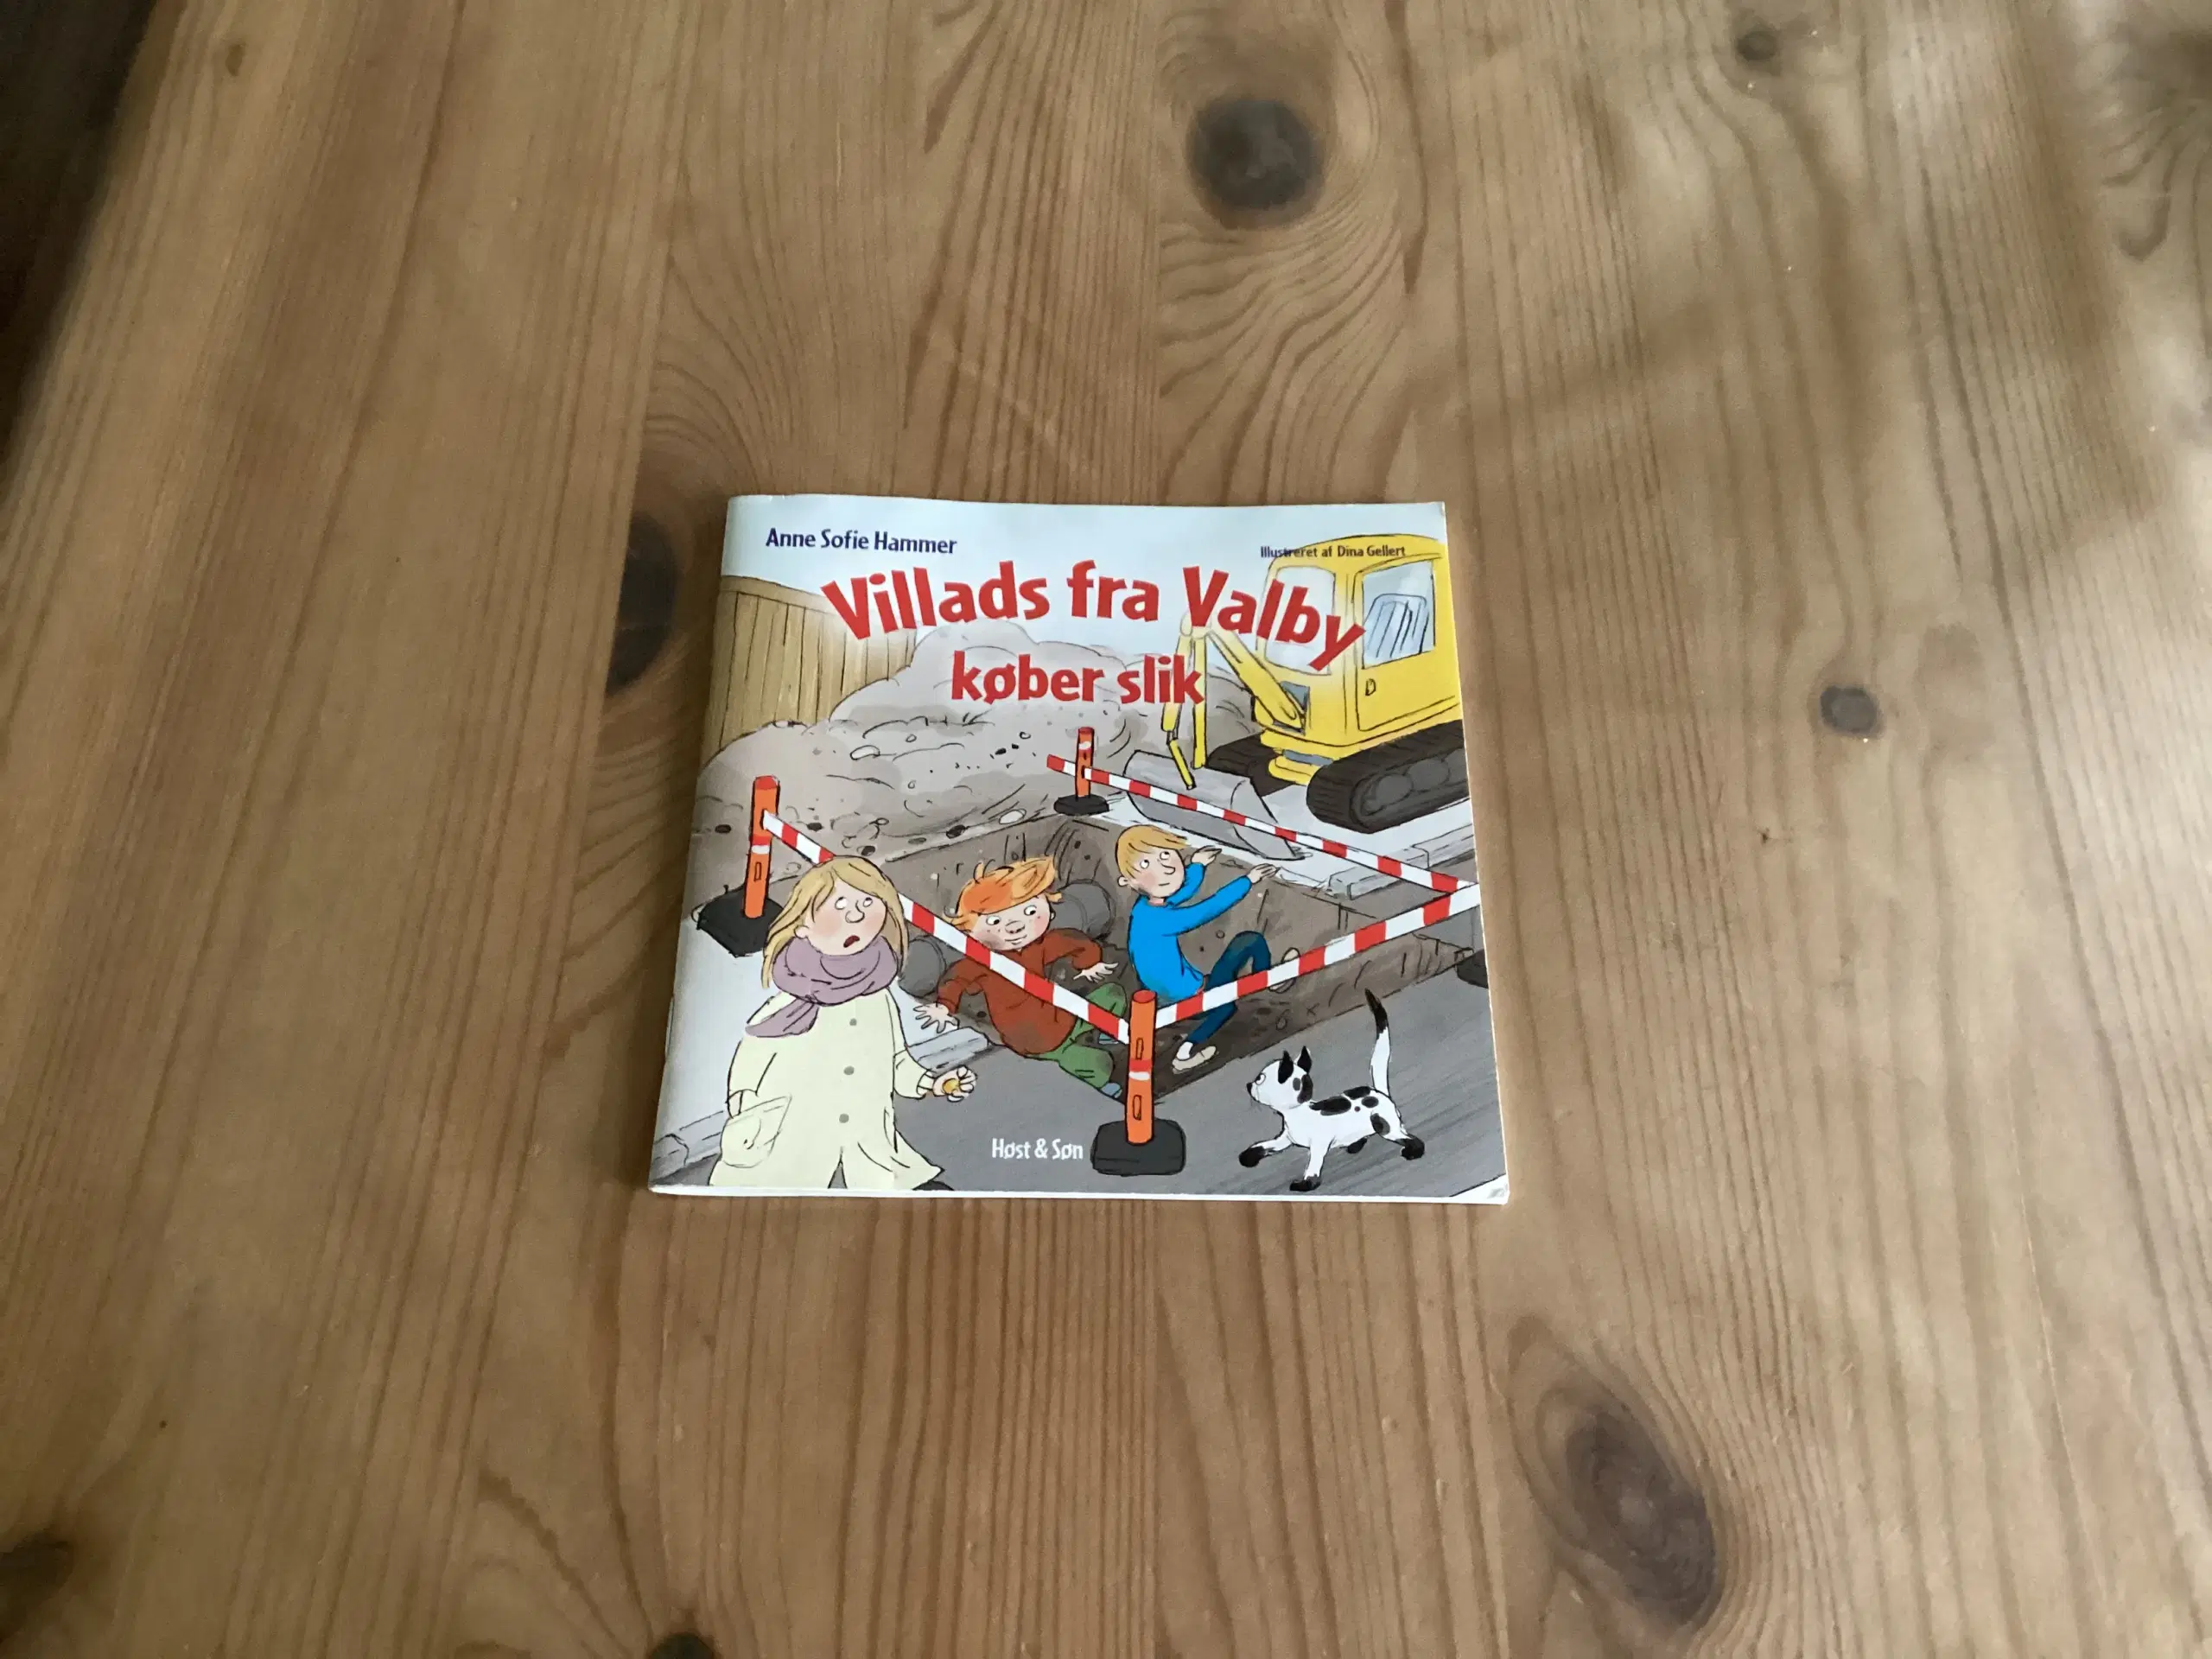 Villads fra Valby Bøger